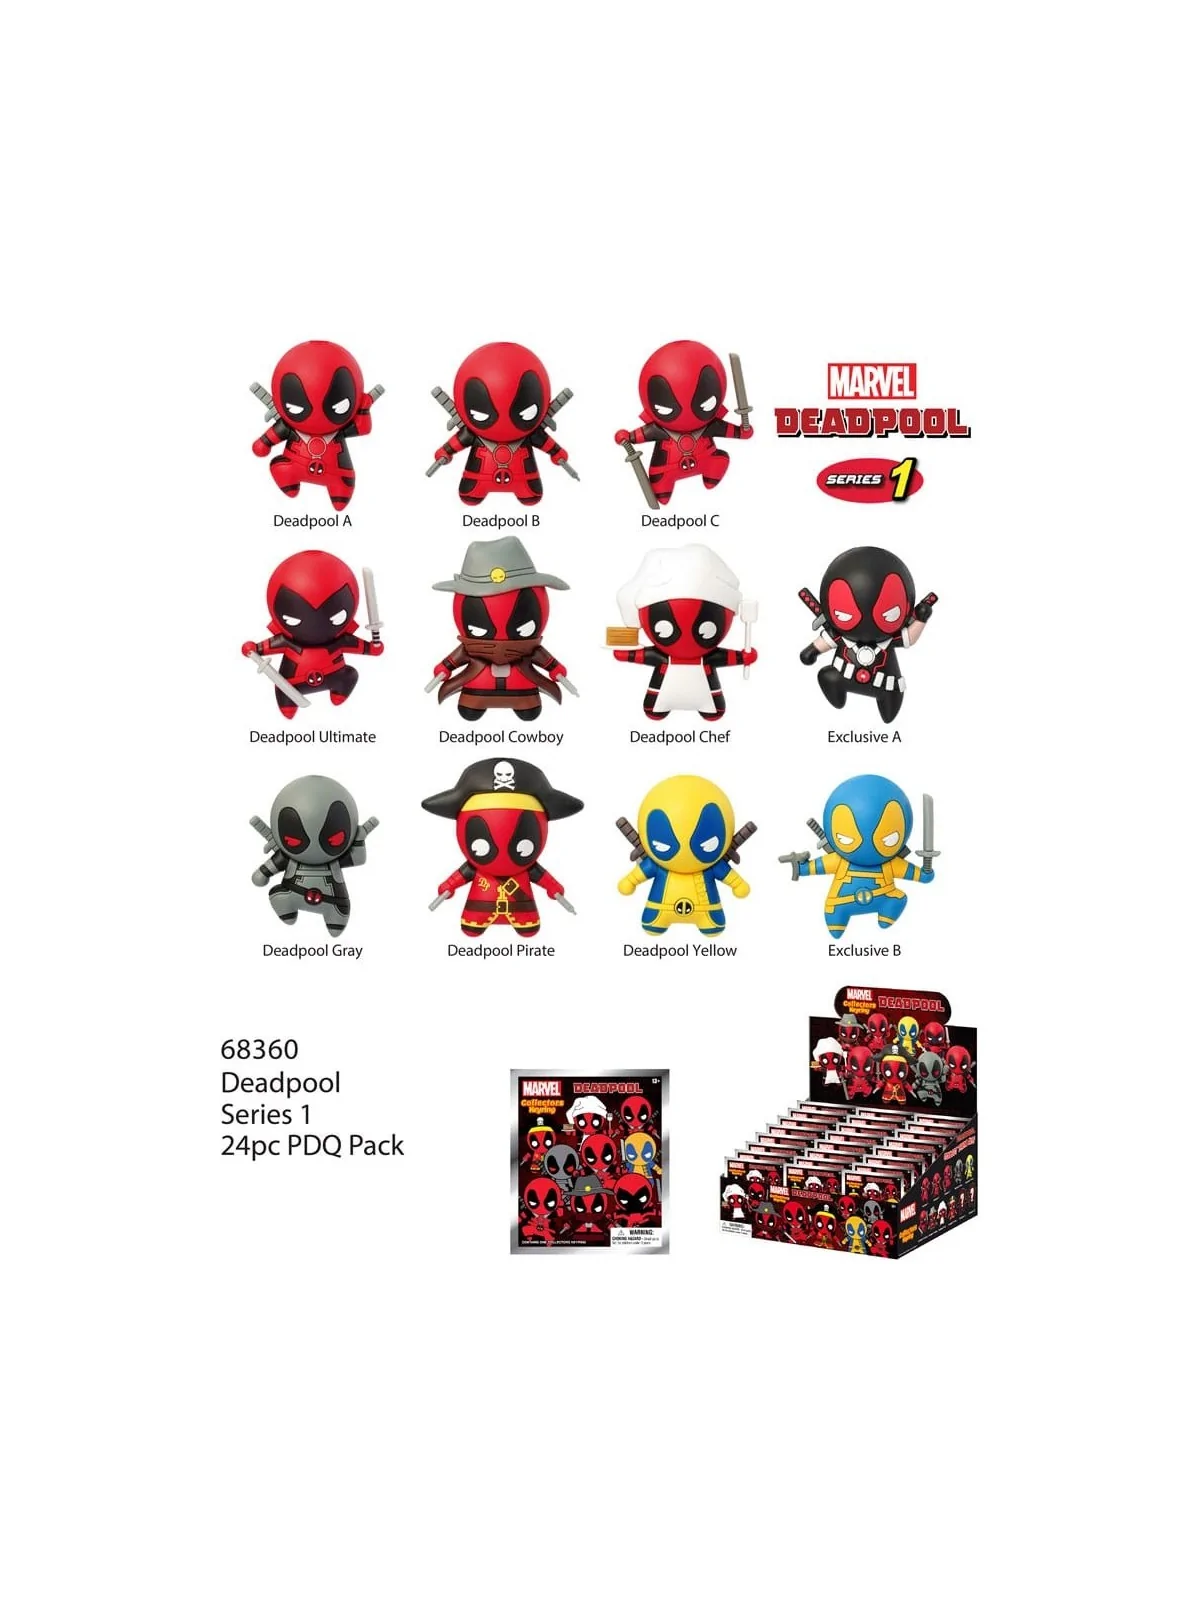 Comprar Llavero Deadpool barato al mejor precio 7,99 € de Monogram